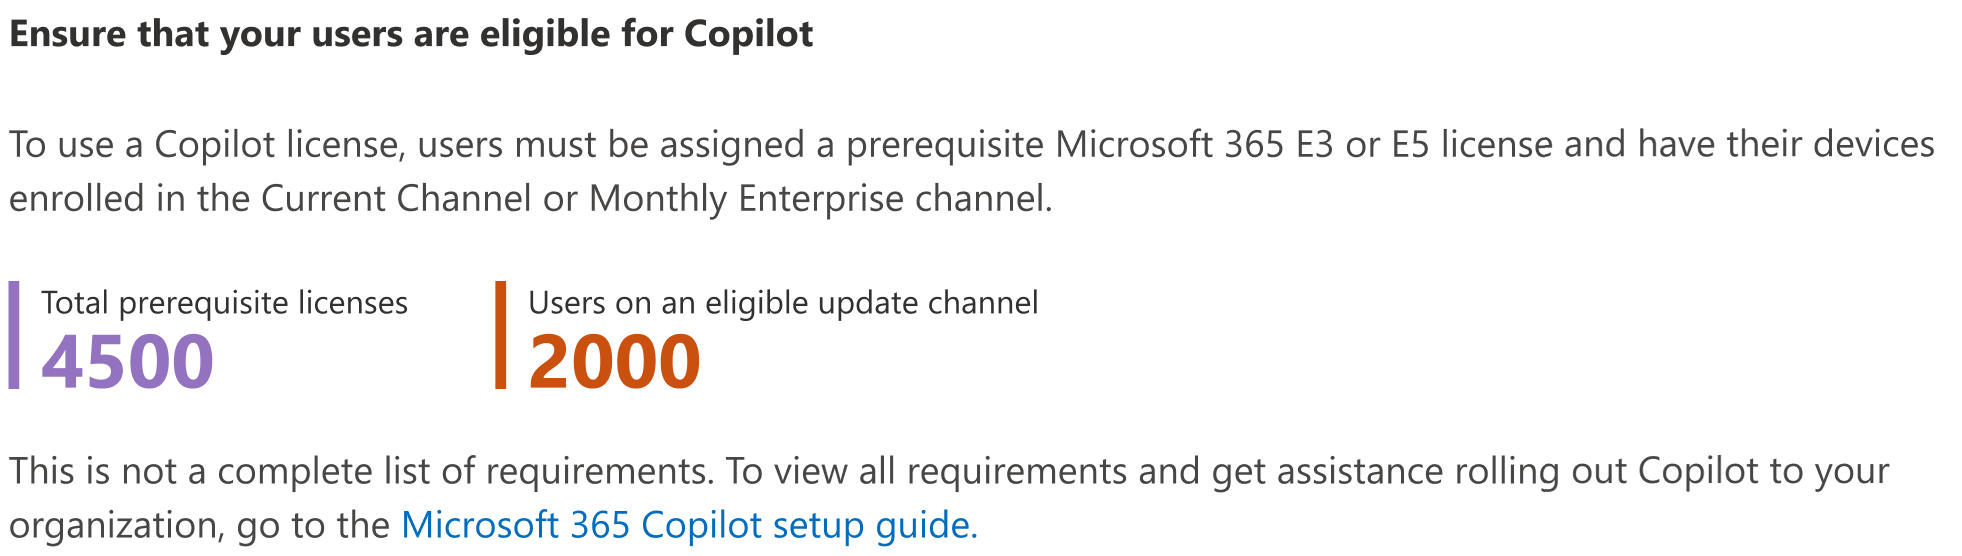 Снимок экрана: как убедиться, что пользователи имеют право на Copilot для Microsoft 365.